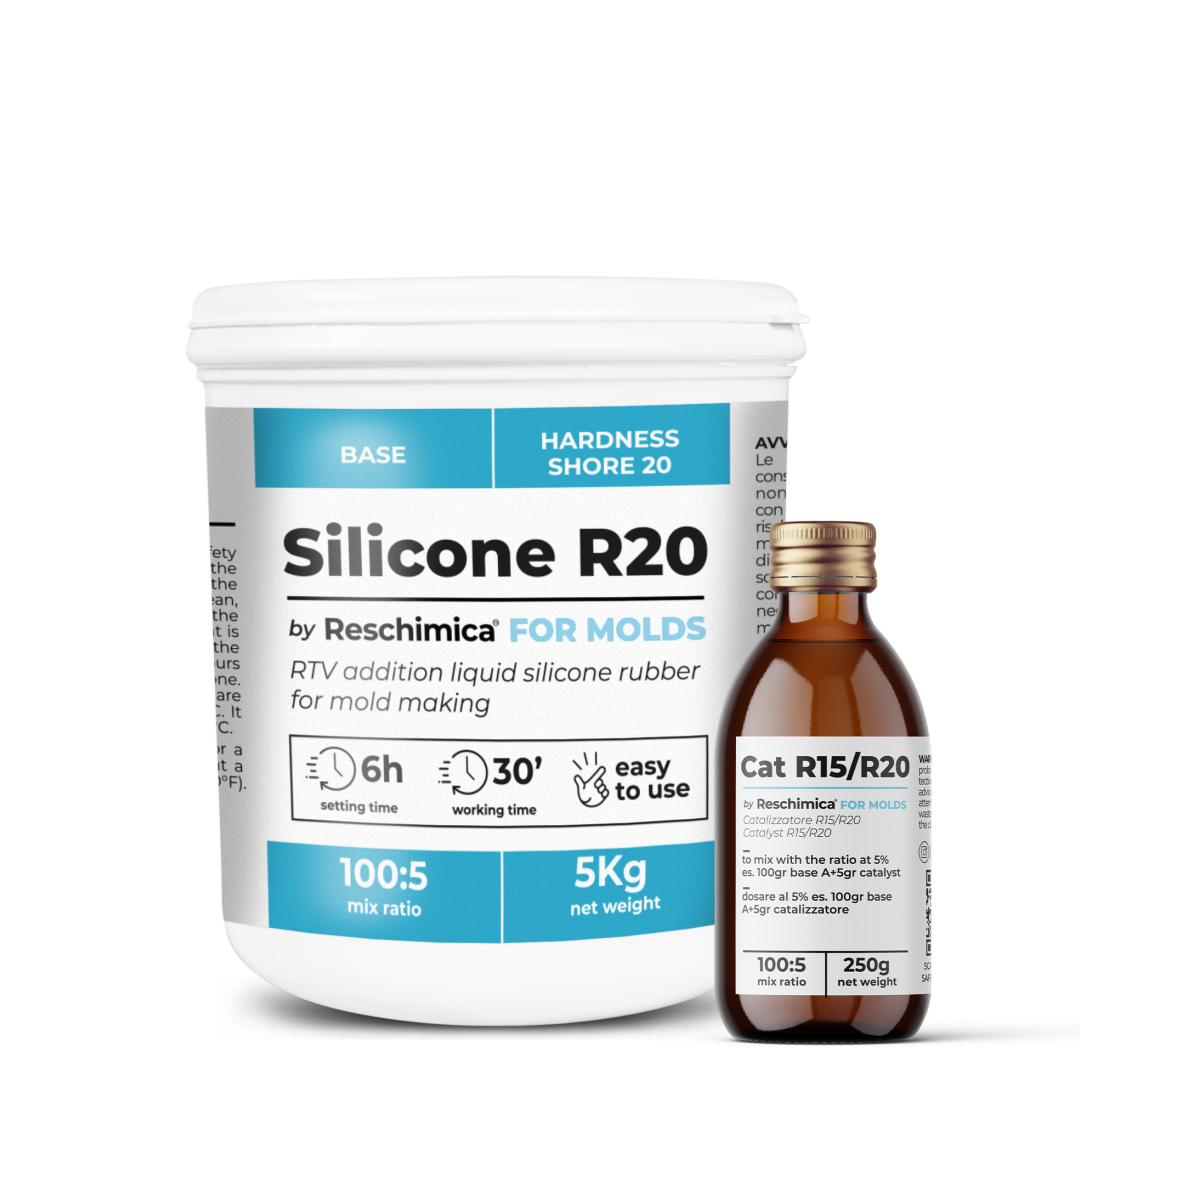 R20 - Gomma siliconica per condensazione, stampi di media durezza molto elastici